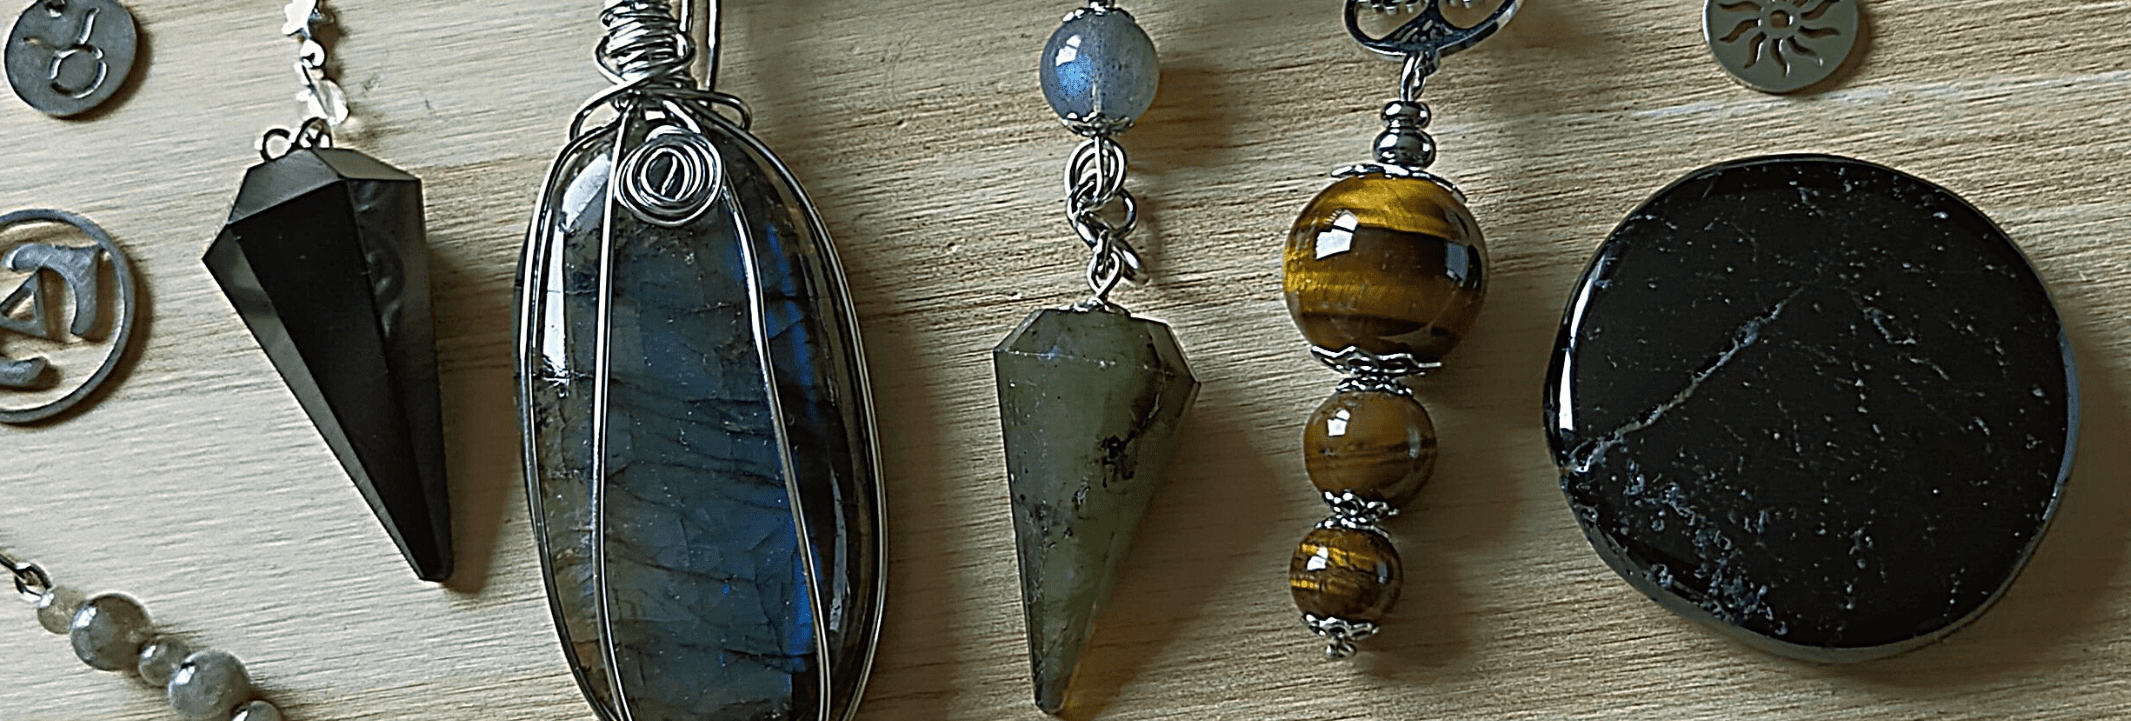 les créations : pendule, bijoux et cristaux de Hakovena